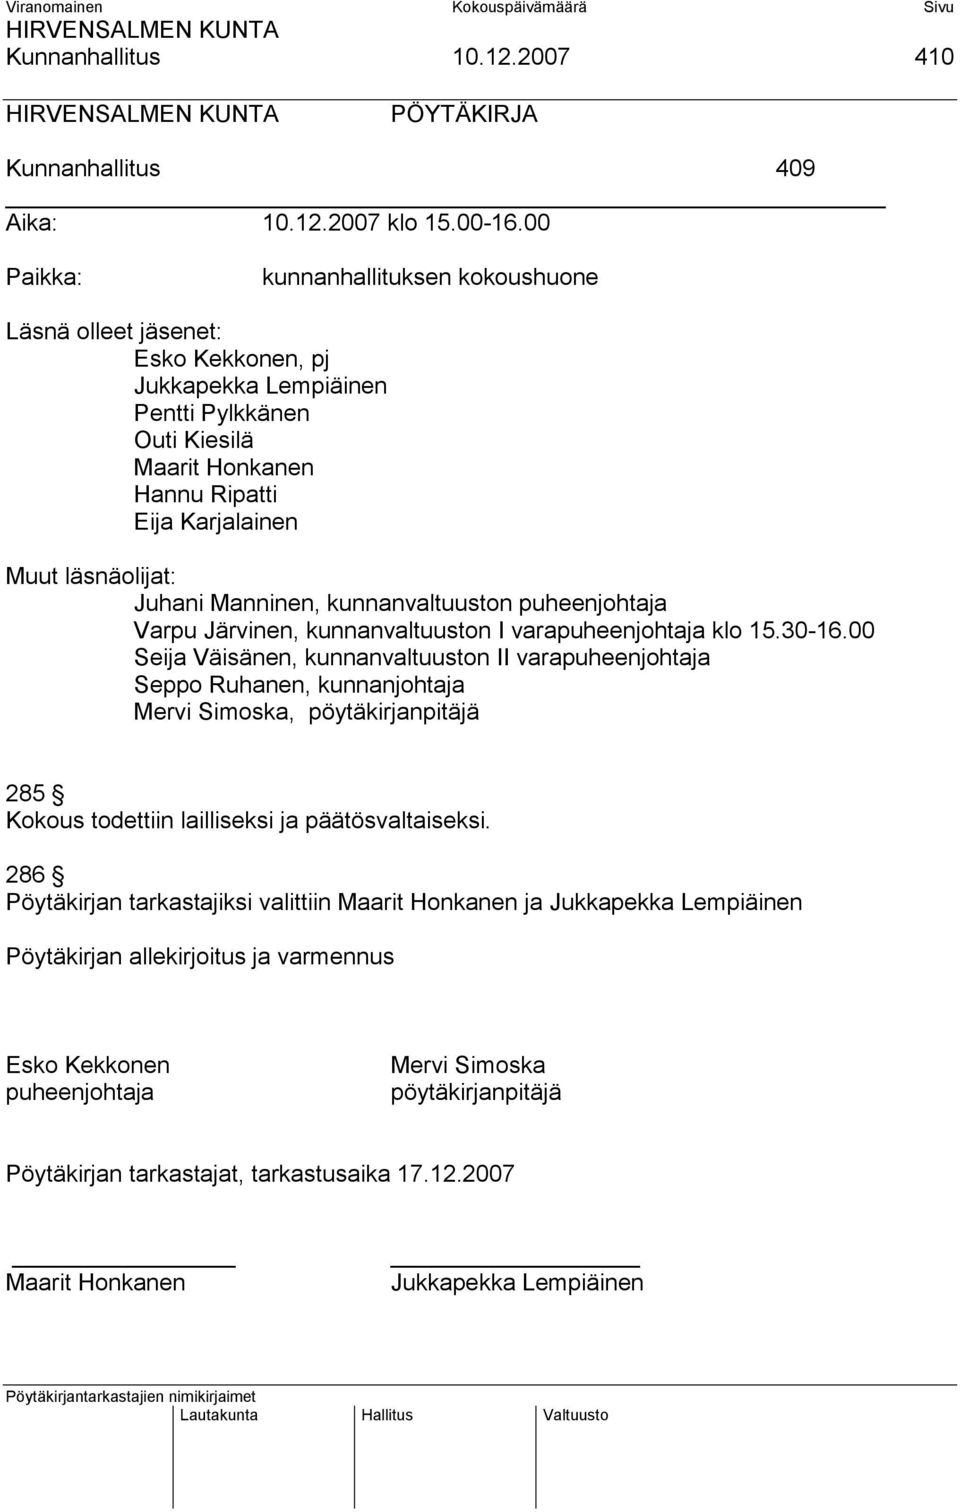 Juhani Manninen, kunnanvaltuuston puheenjohtaja Varpu Järvinen, kunnanvaltuuston I varapuheenjohtaja klo 15.30-16.